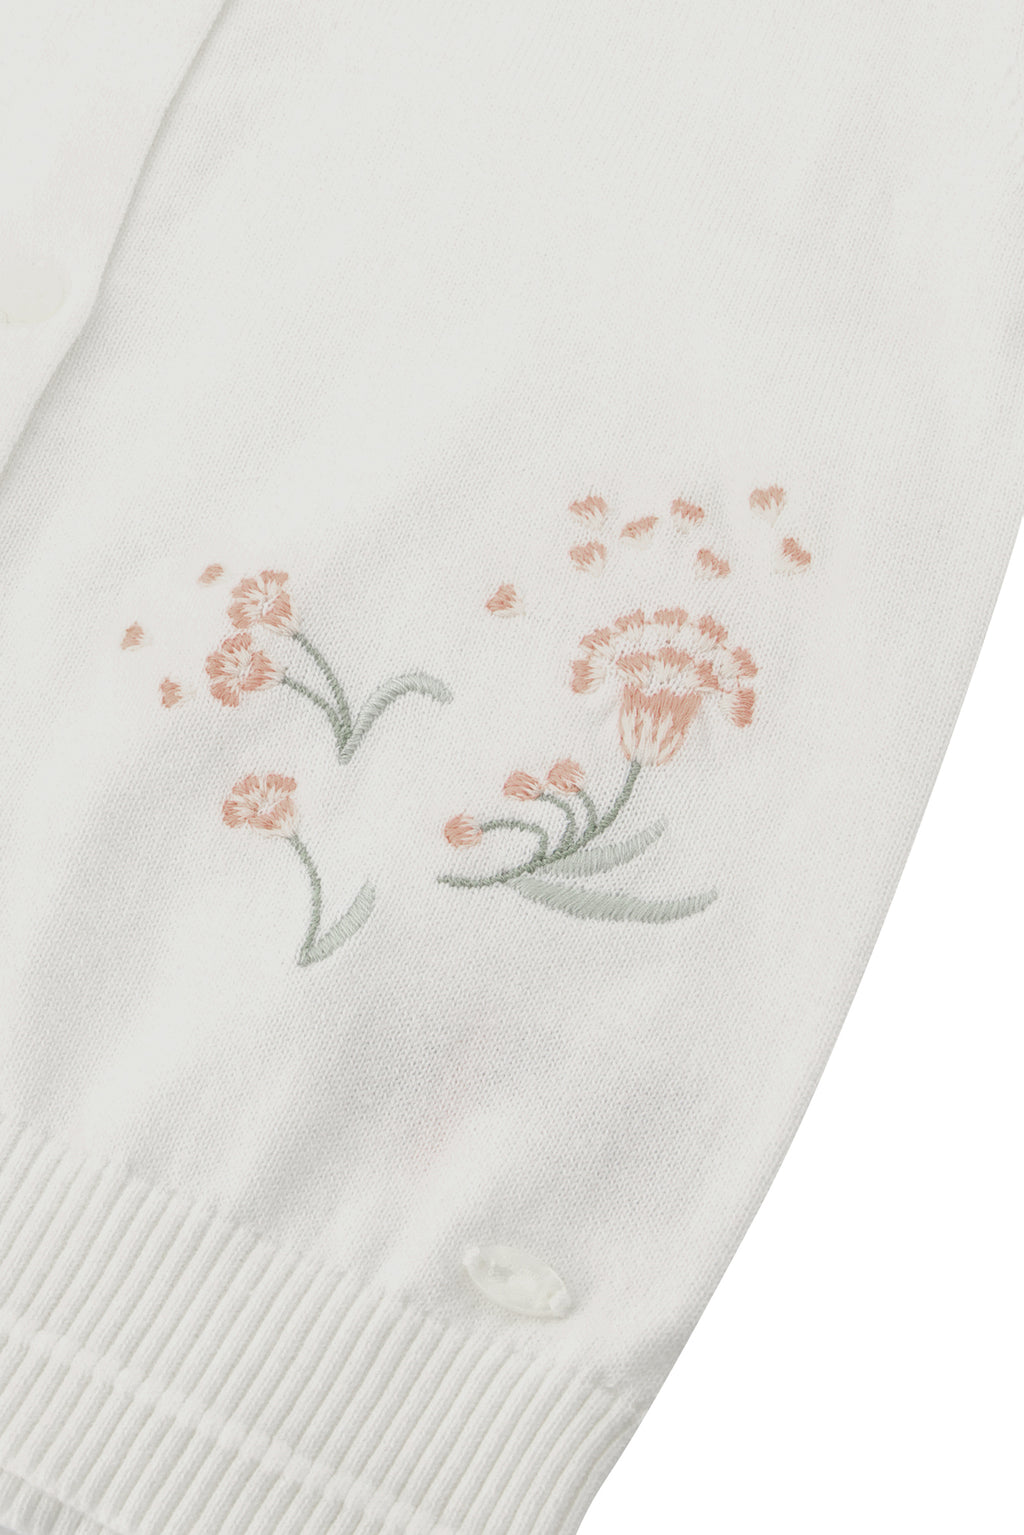 Cardigan - Ecru Flower embroidery